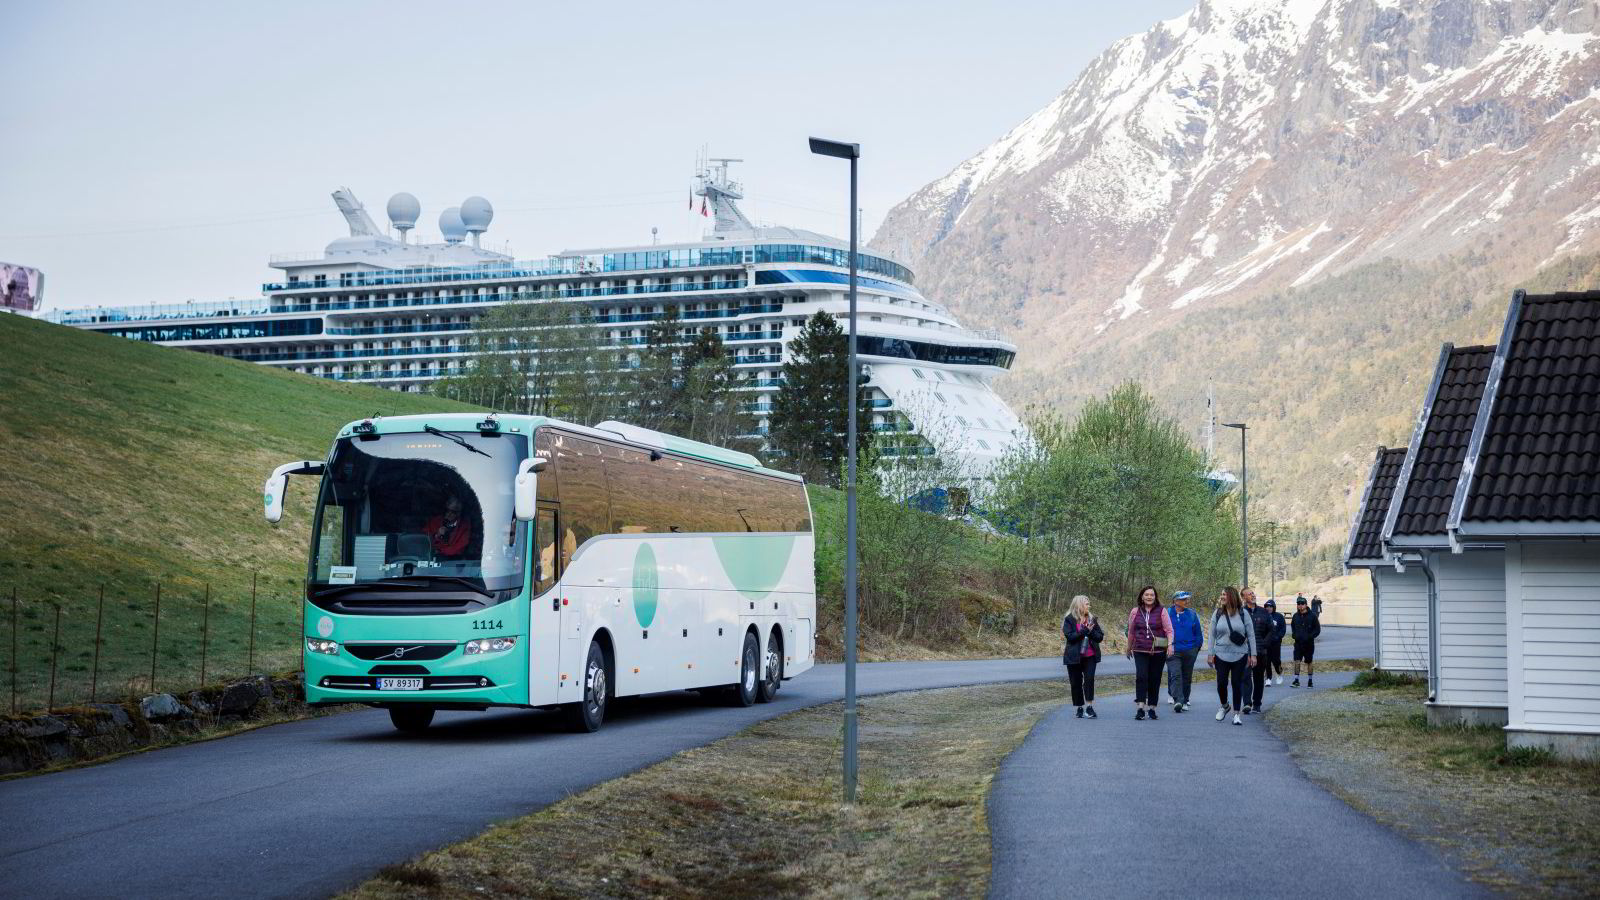 Frykter krav om norsk lønn på cruiseskip: – Konsekvensene kan bli katastrofale